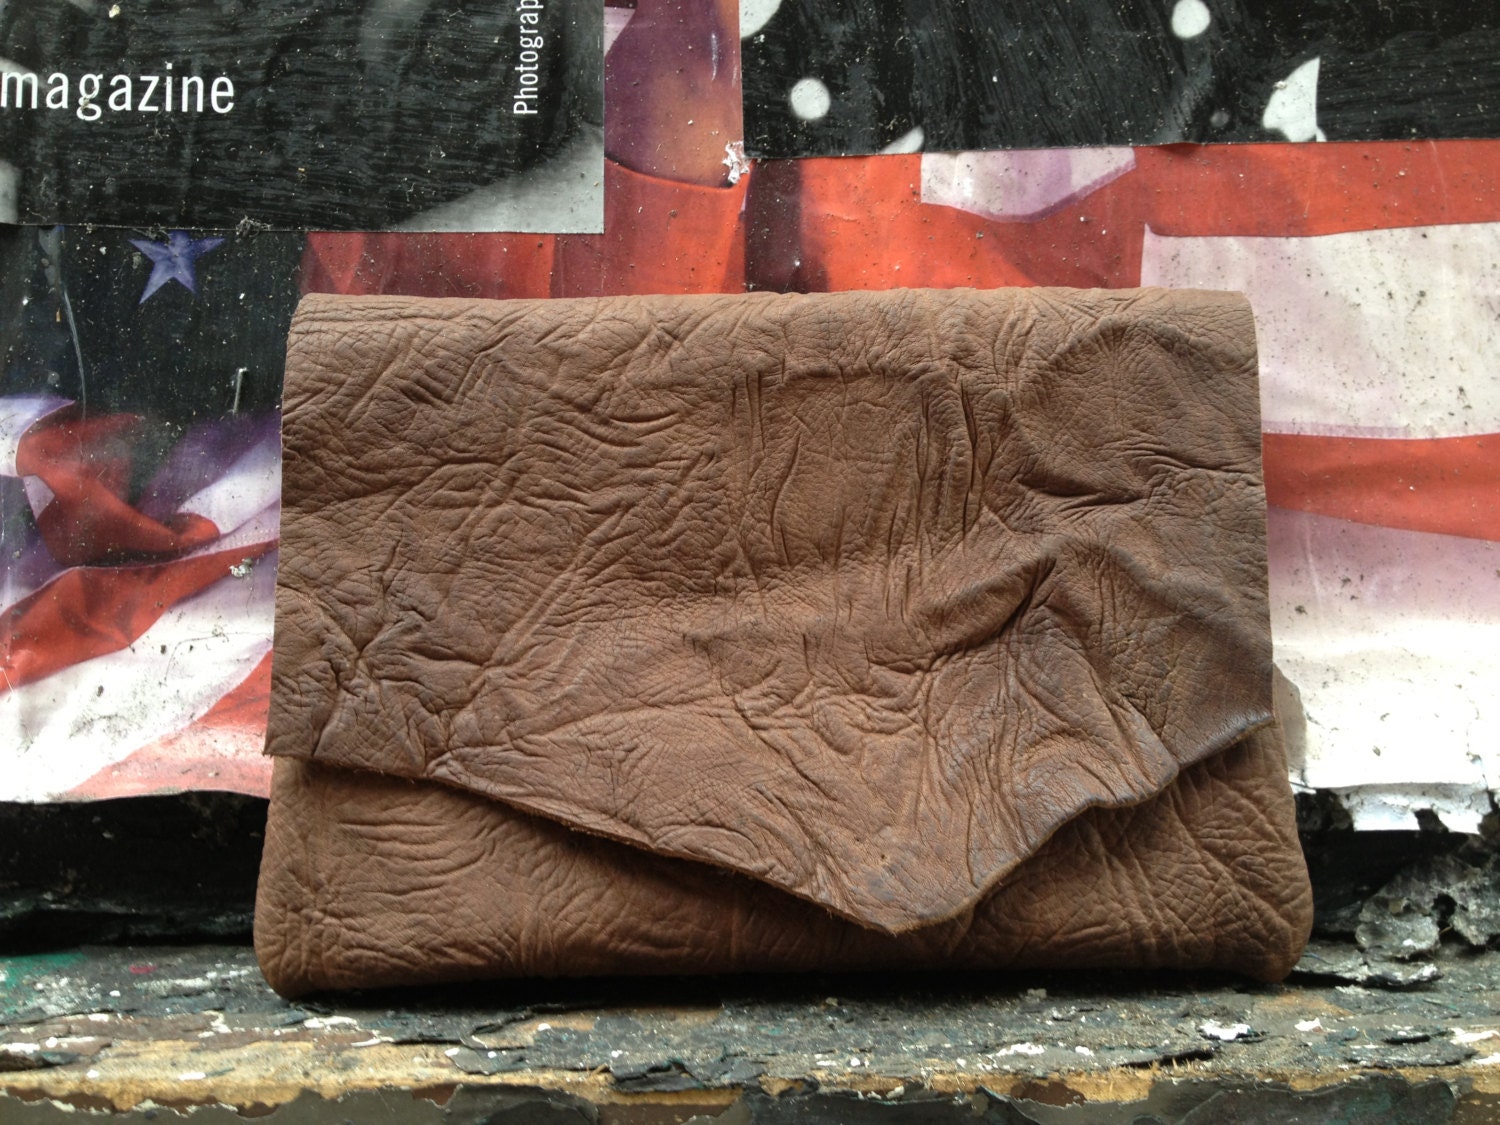 Buffalo Ipad mini case - hand stitched deckled edge leather